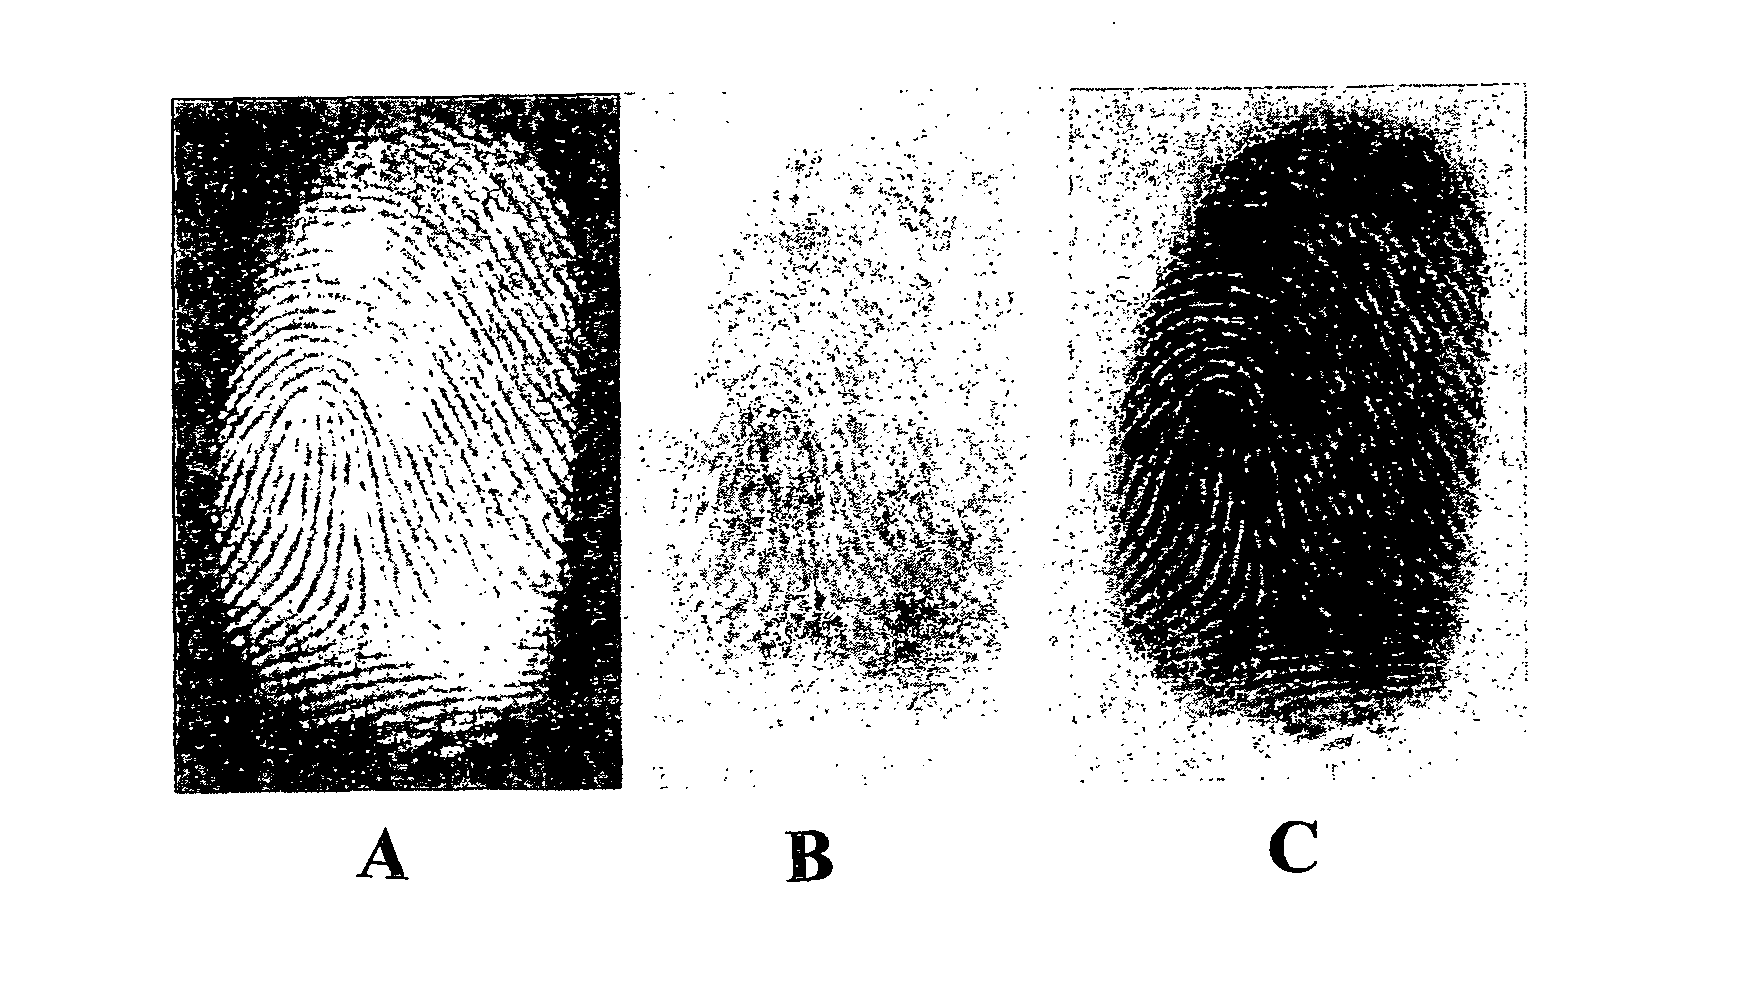 Method of developing latent fingerprints